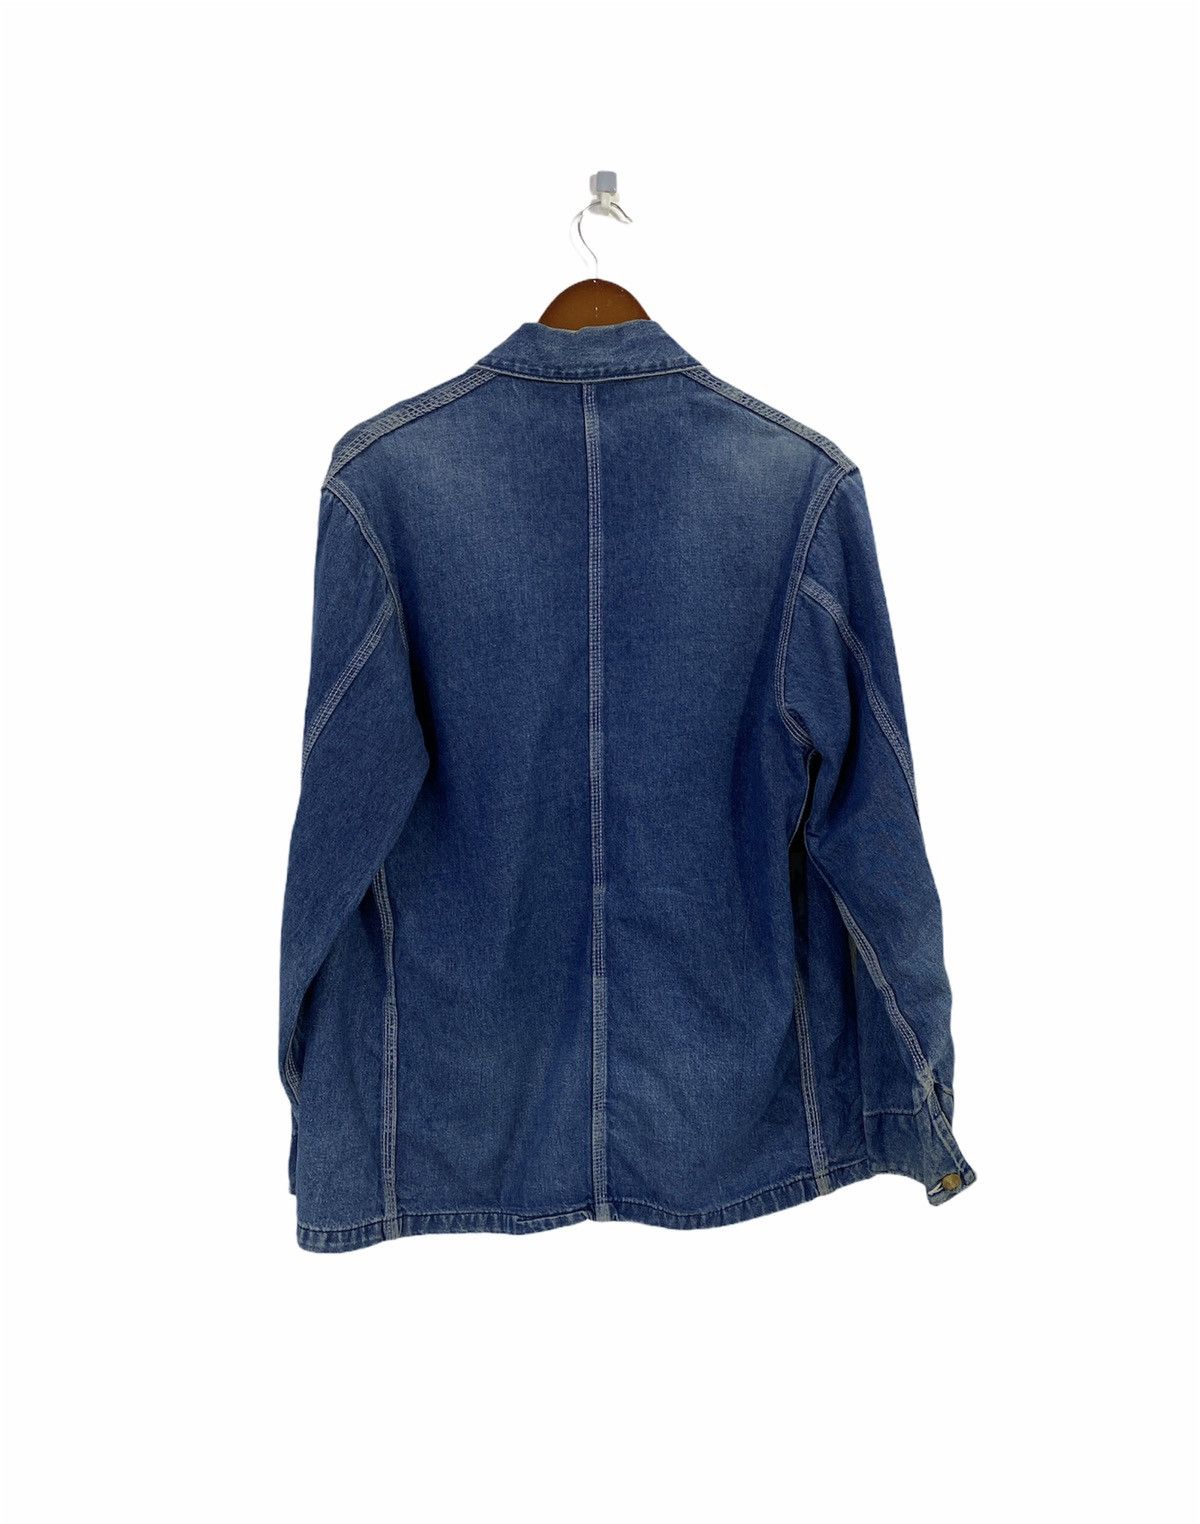 Carhartt Denim Chore Jacket Workwear Destressed Design - 2